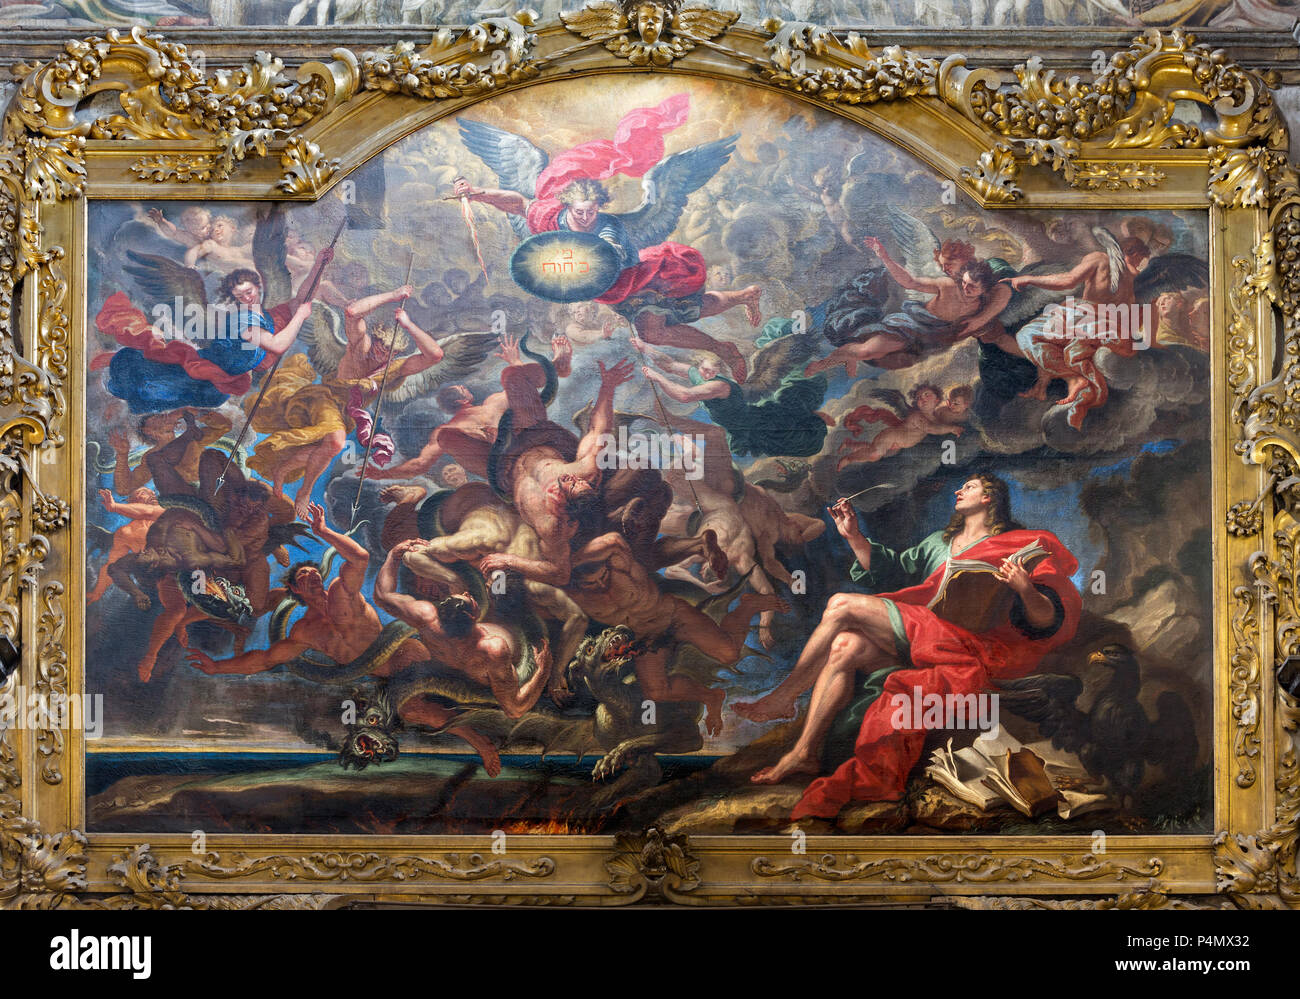 PARMA, Italia - 15 Aprile 2018: la pittura della battaglia di angeli dopo l'Apocalisse di san Giovanni nella Chiesa di San Giovanni Evangelista Foto Stock